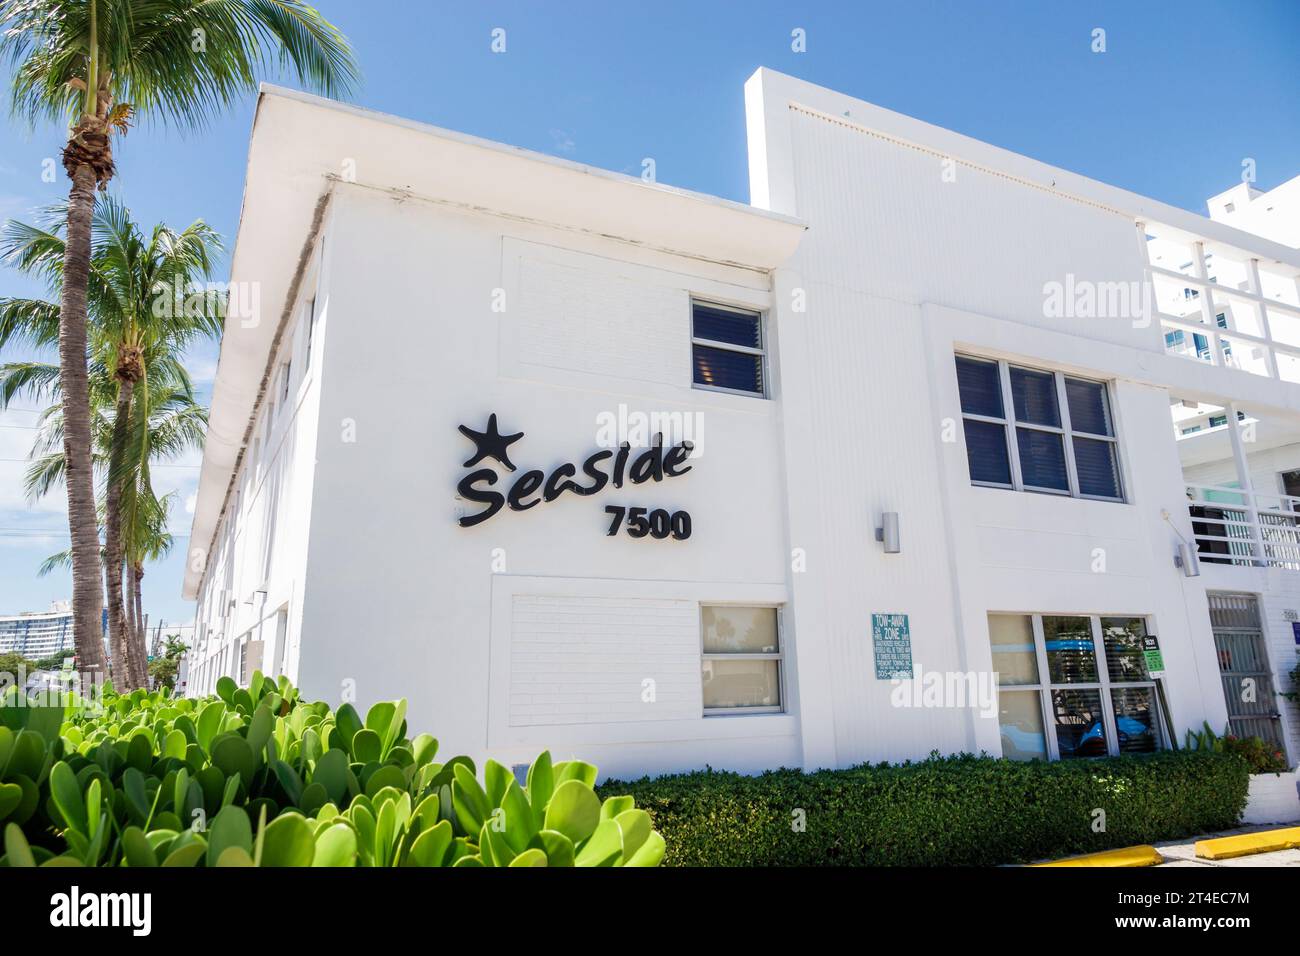 Miami Beach Floride, extérieur, entrée principale de l'hôtel, Collins Avenue, North Beach, panneau Seaside All Suites Hotel, Miami Modernism MIMO style Banque D'Images